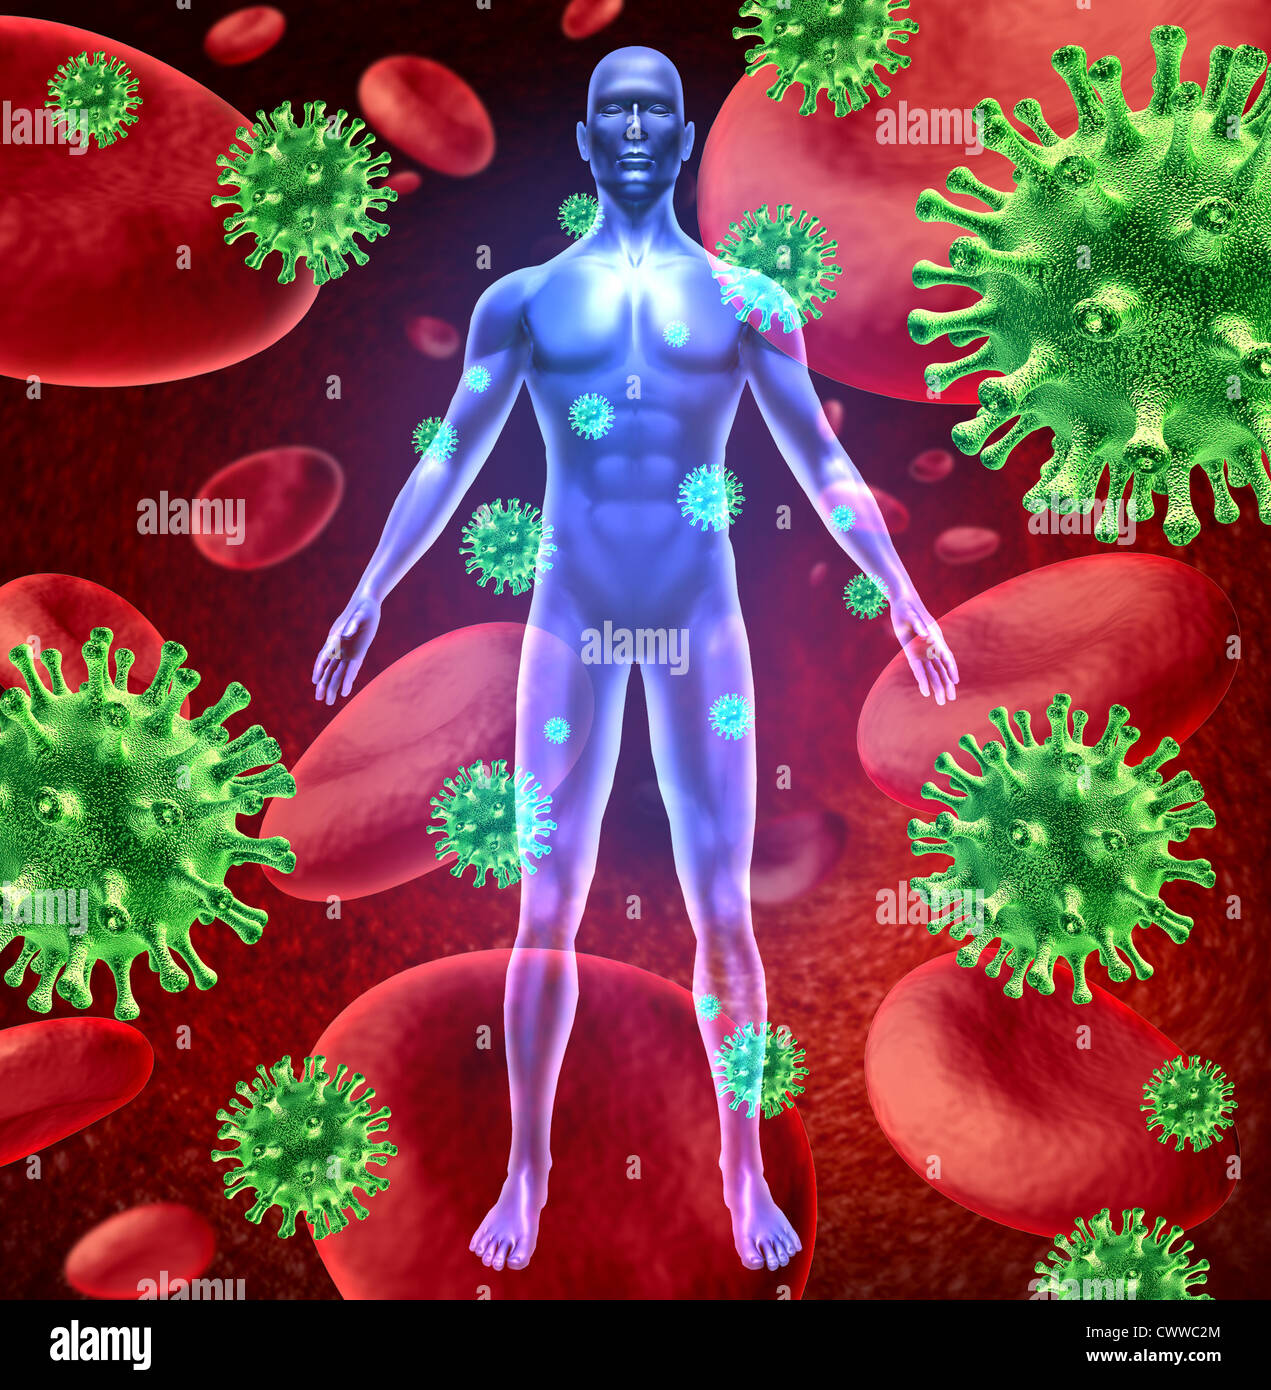 Menschlichen Viruskrankheit vertreten durch ein Mensch mit roten Blutkörperchen und grünen Virus Zellen angreifen einen gesunden Patienten, die medizinische Behandlung mit Krankenhaus Medizin, um die eindringenden Insekten zu töten. Stockfoto